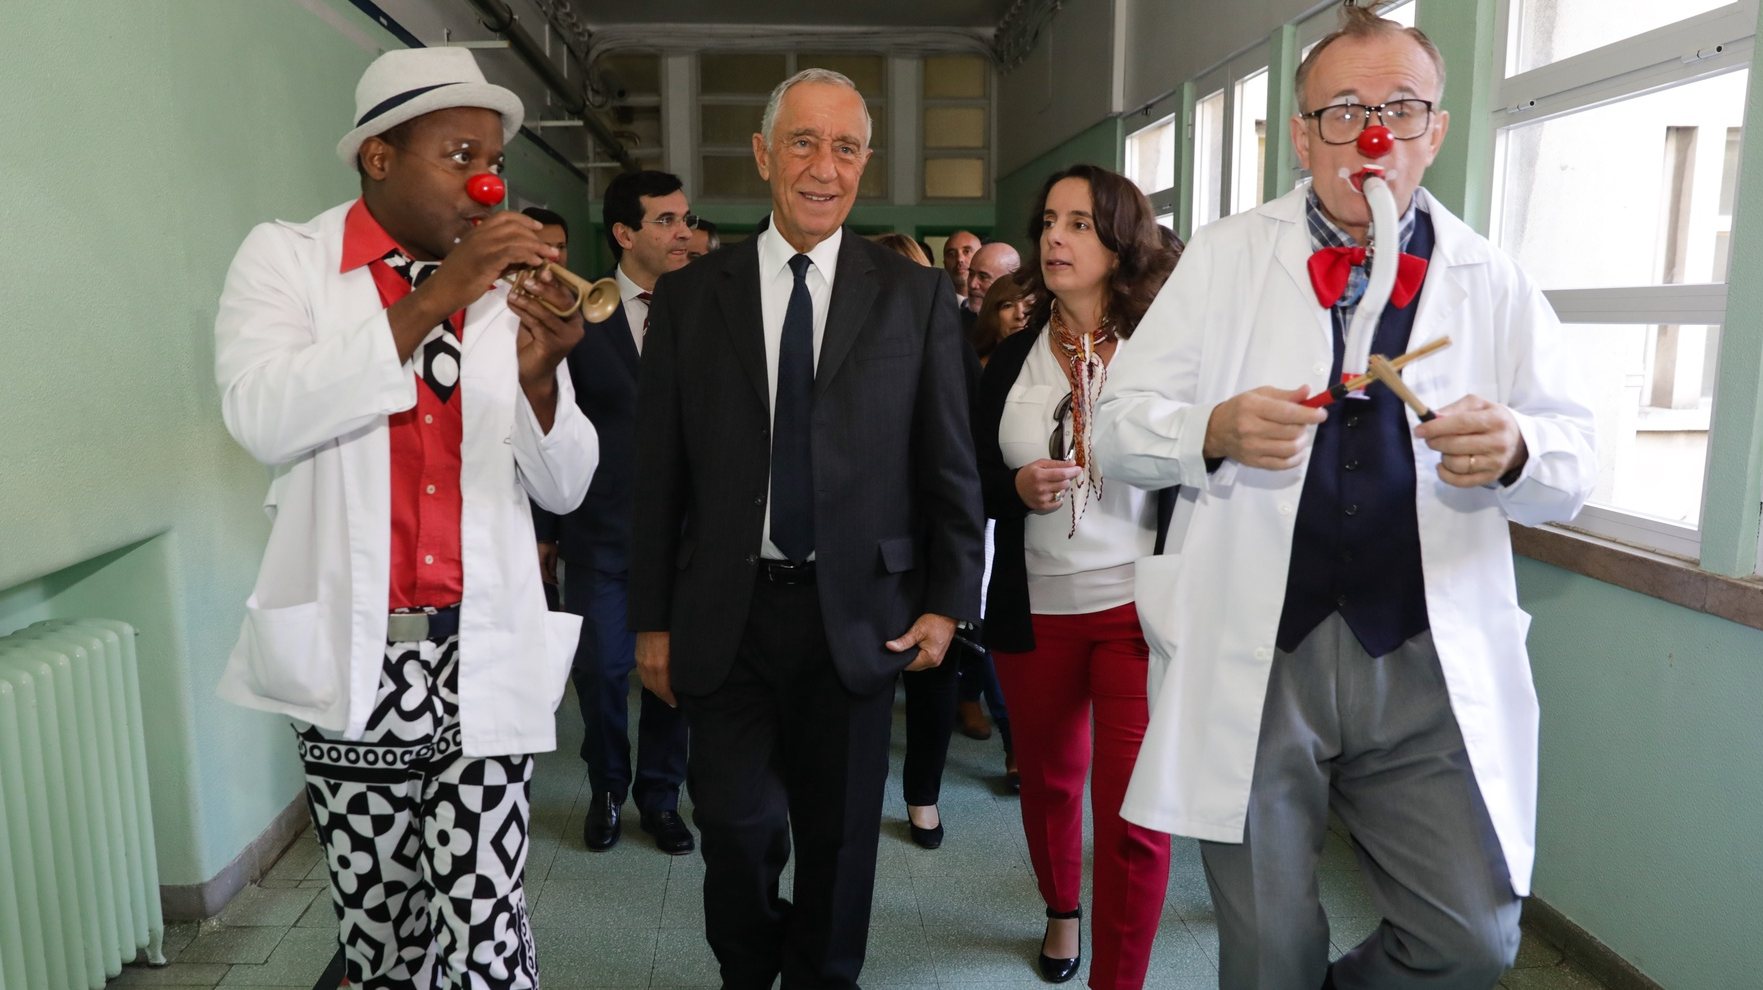 O Presidente da República Marcelo Rebelo de Sousa visitou o Hospital Dona Estefânia por ocasião do 140.º Aniversário, acompanhado pela Operação Nariz Vermelho, 20 de novembro de 2017 em Lisboa. TIAGO PETINGA/LUSA